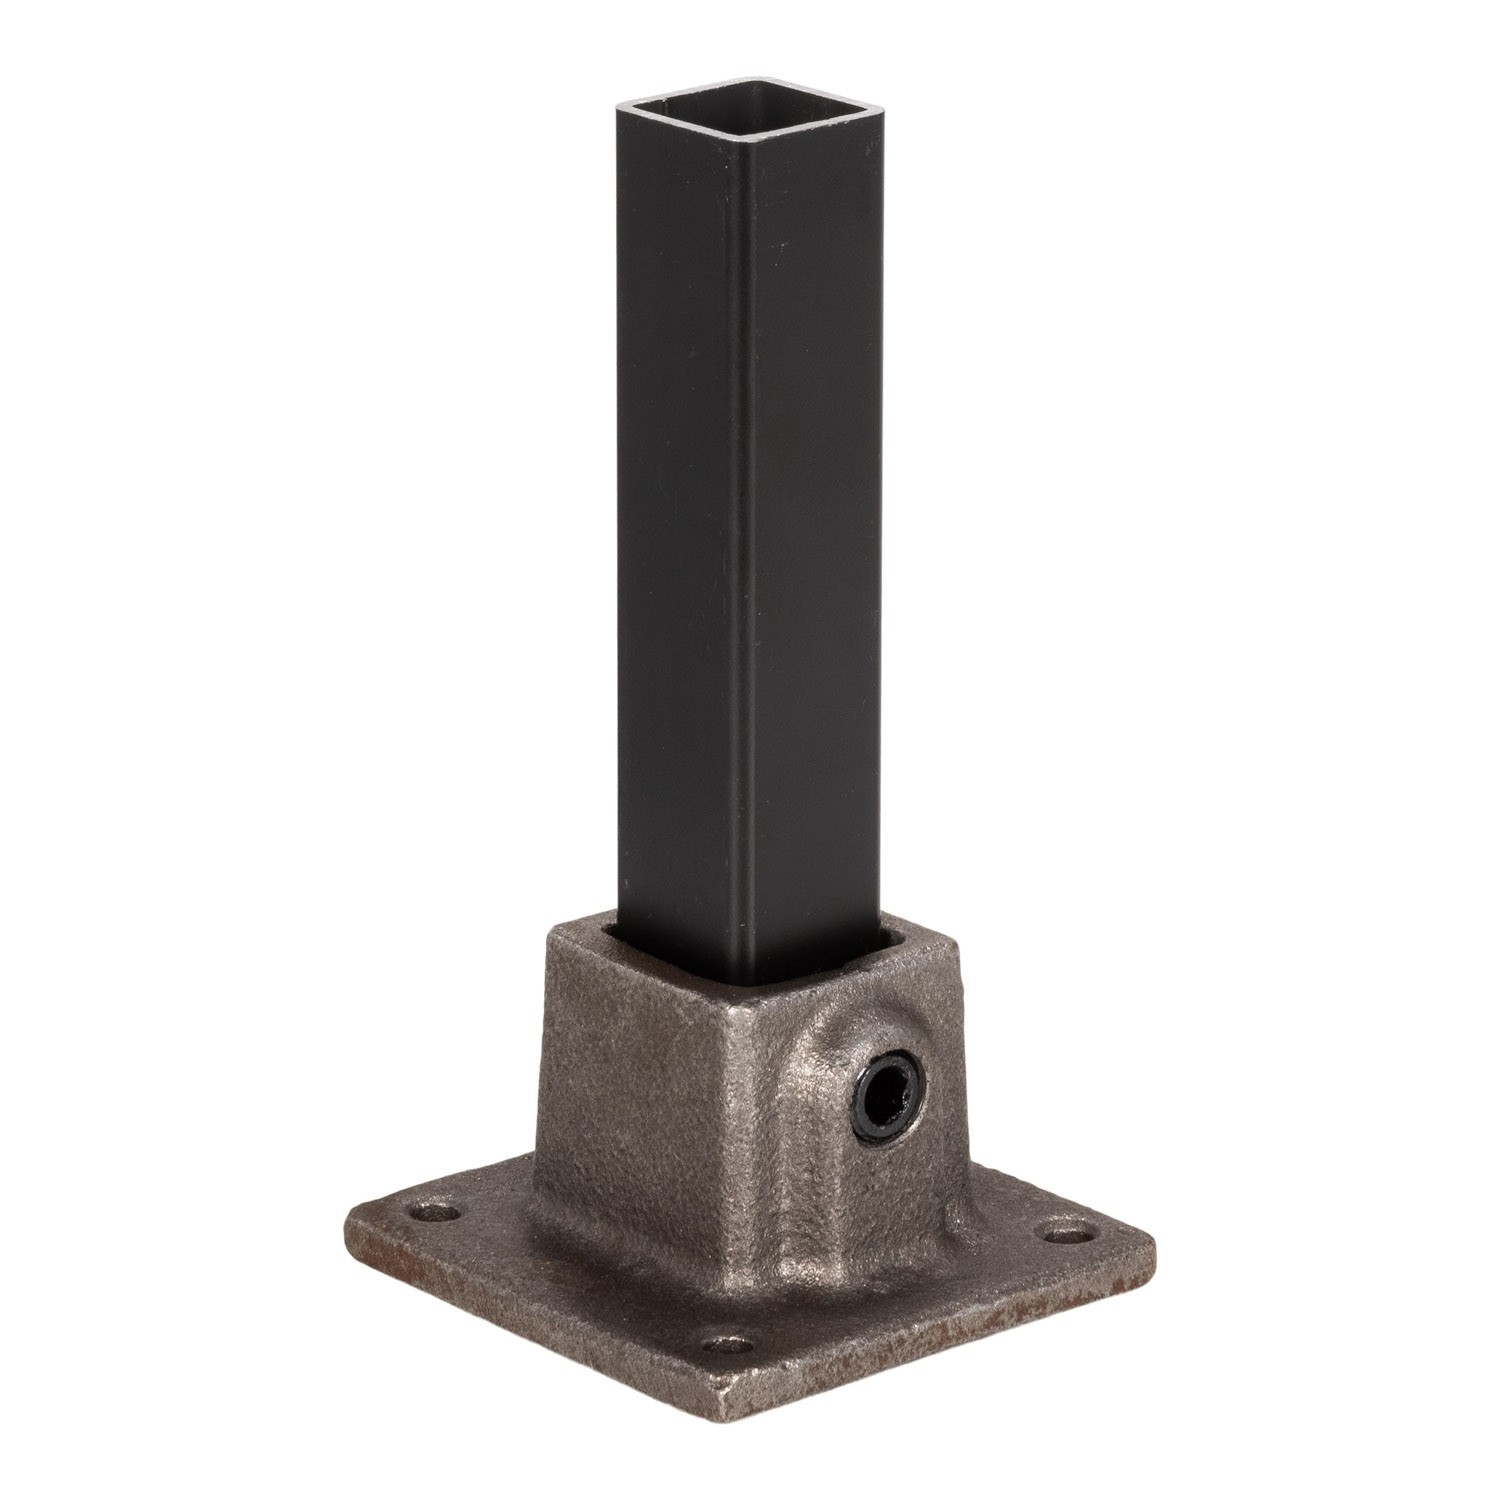 Buiskoppeling voetplaat staalgrijs ⧄ 40 mm mat vierkant